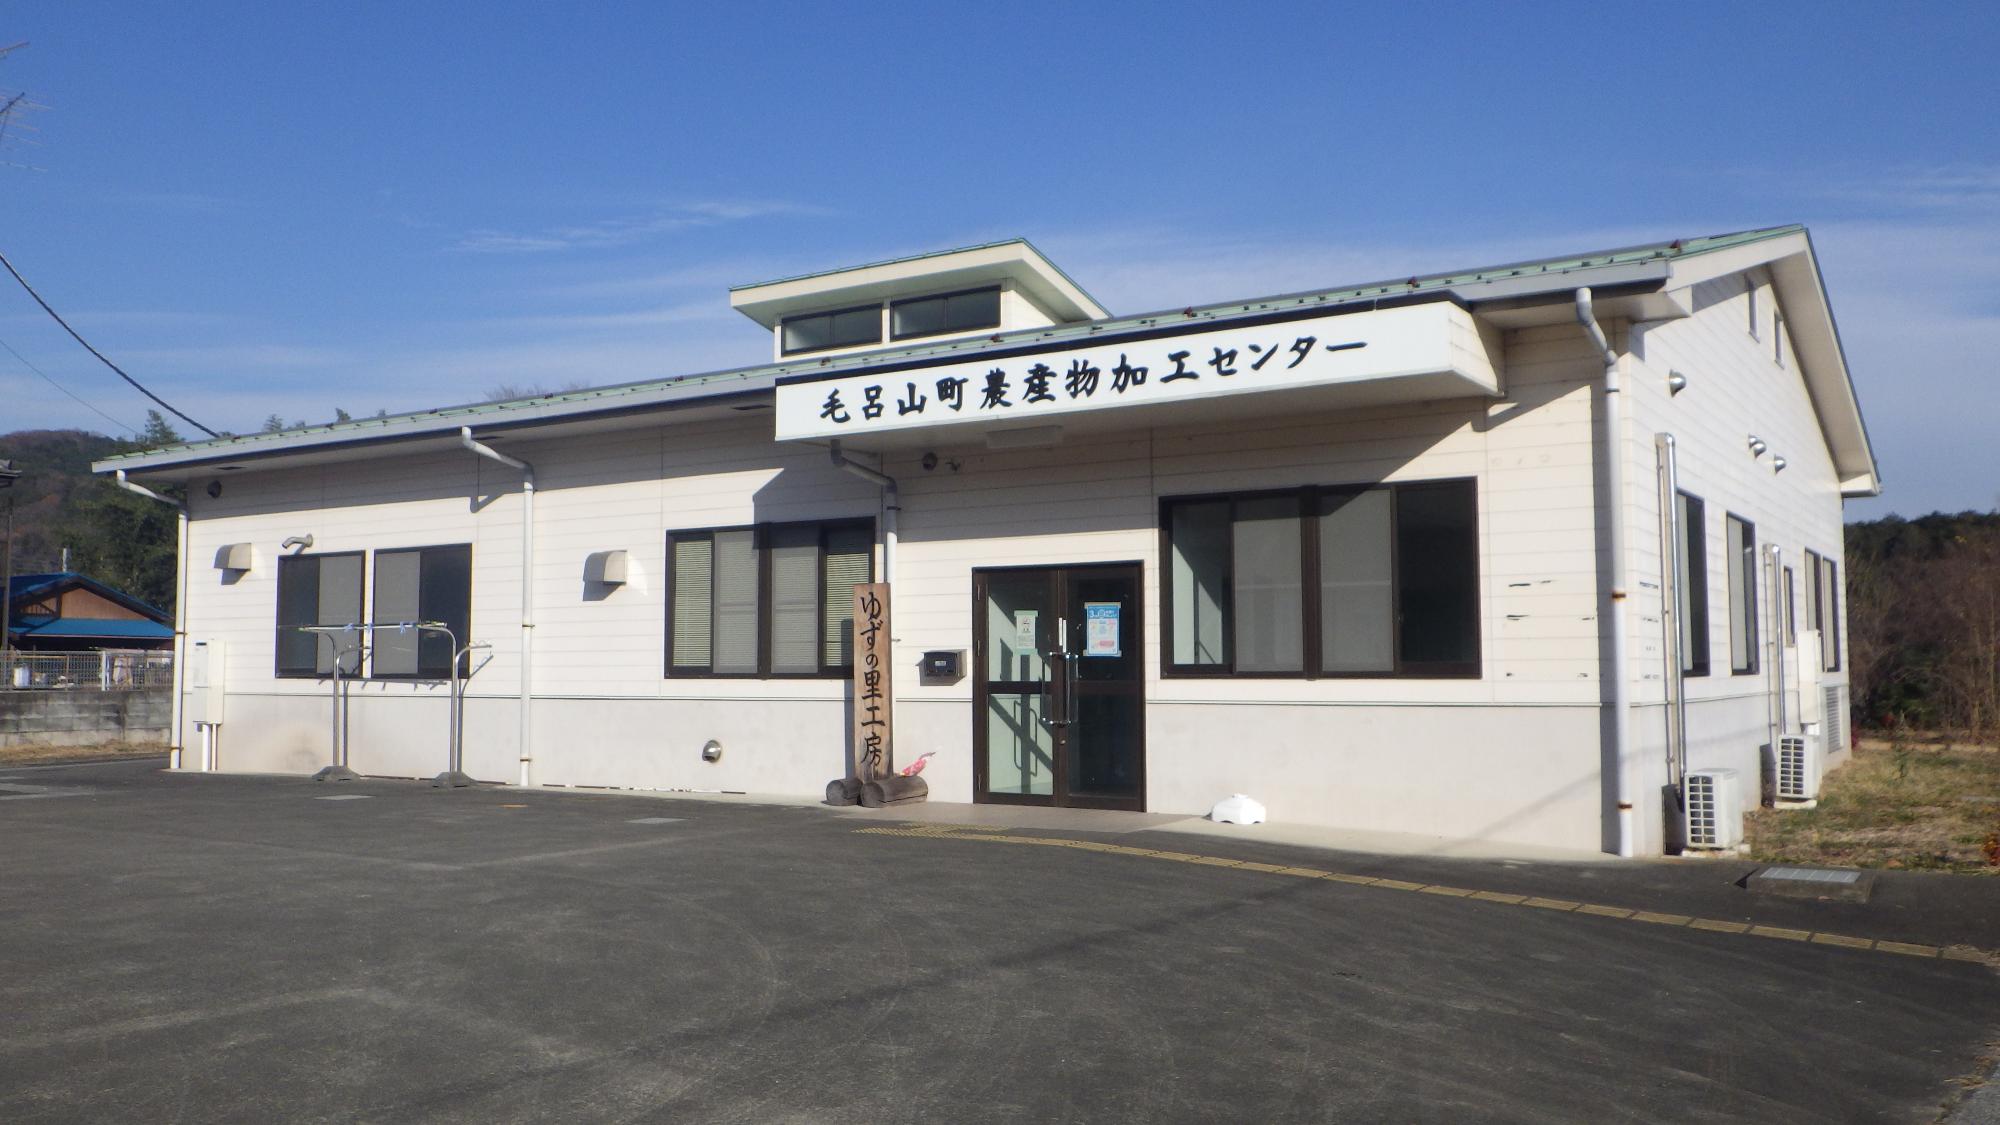 緑色の屋根に毛呂山町農産物加工センターの看板が掲げられた外観写真